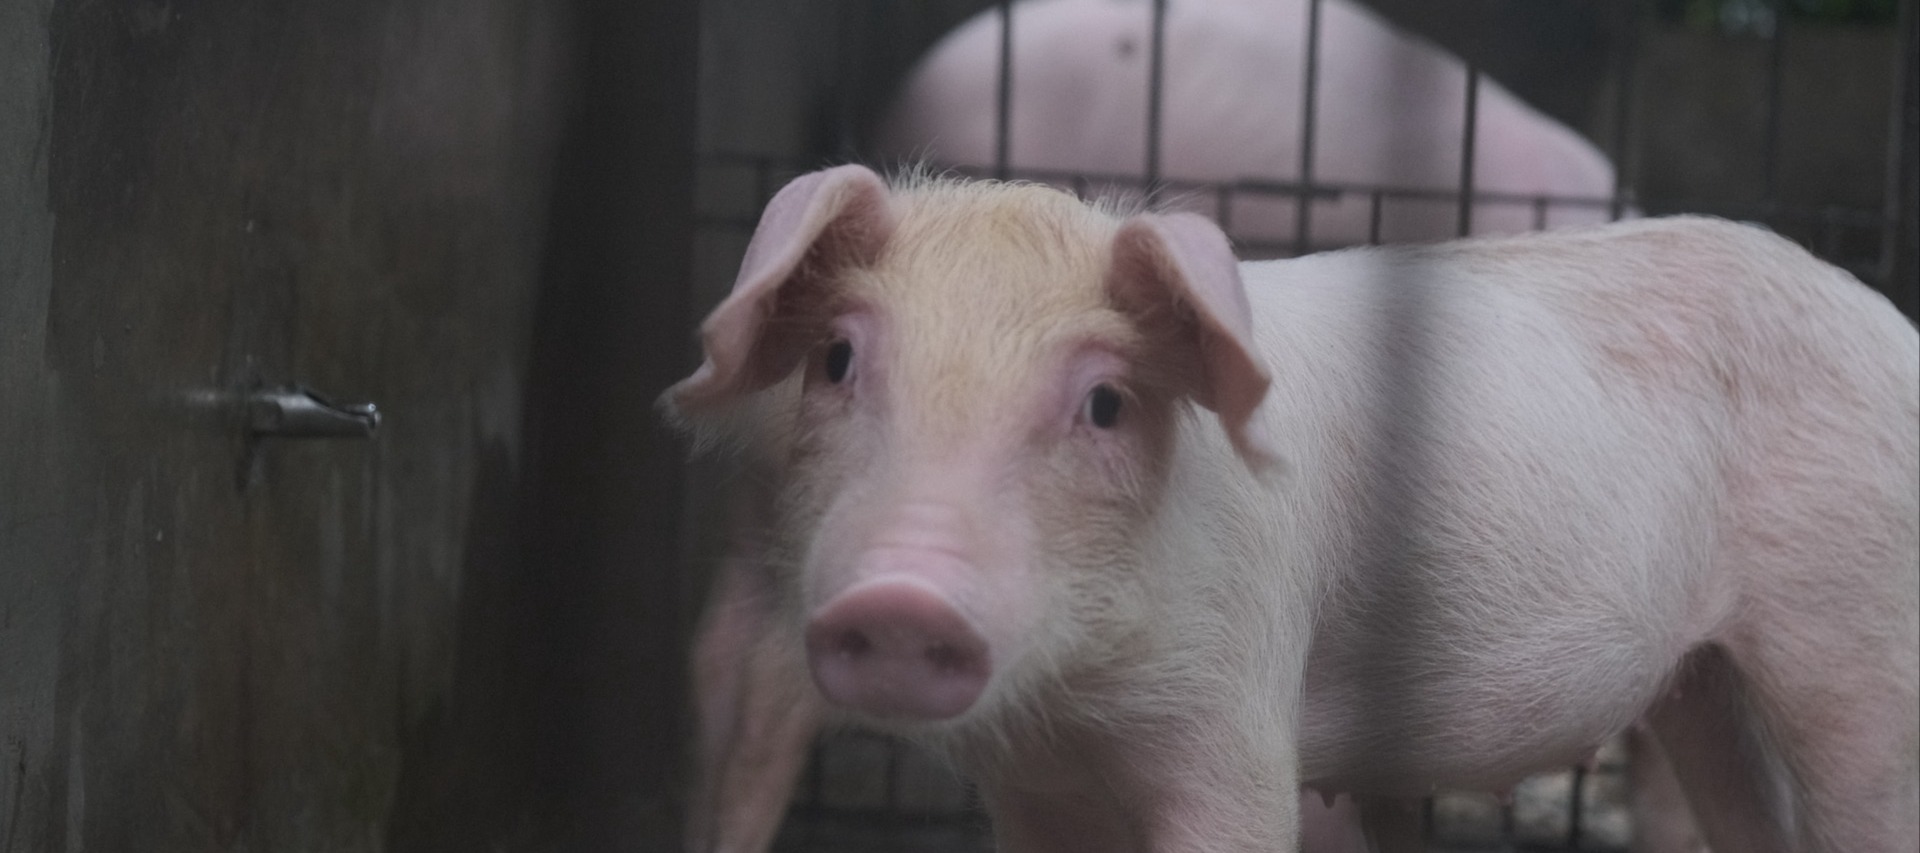 Фото новости: "Свиноводы предложили взять под контроль продажу живых свиней и мяса на маркетплейсах"